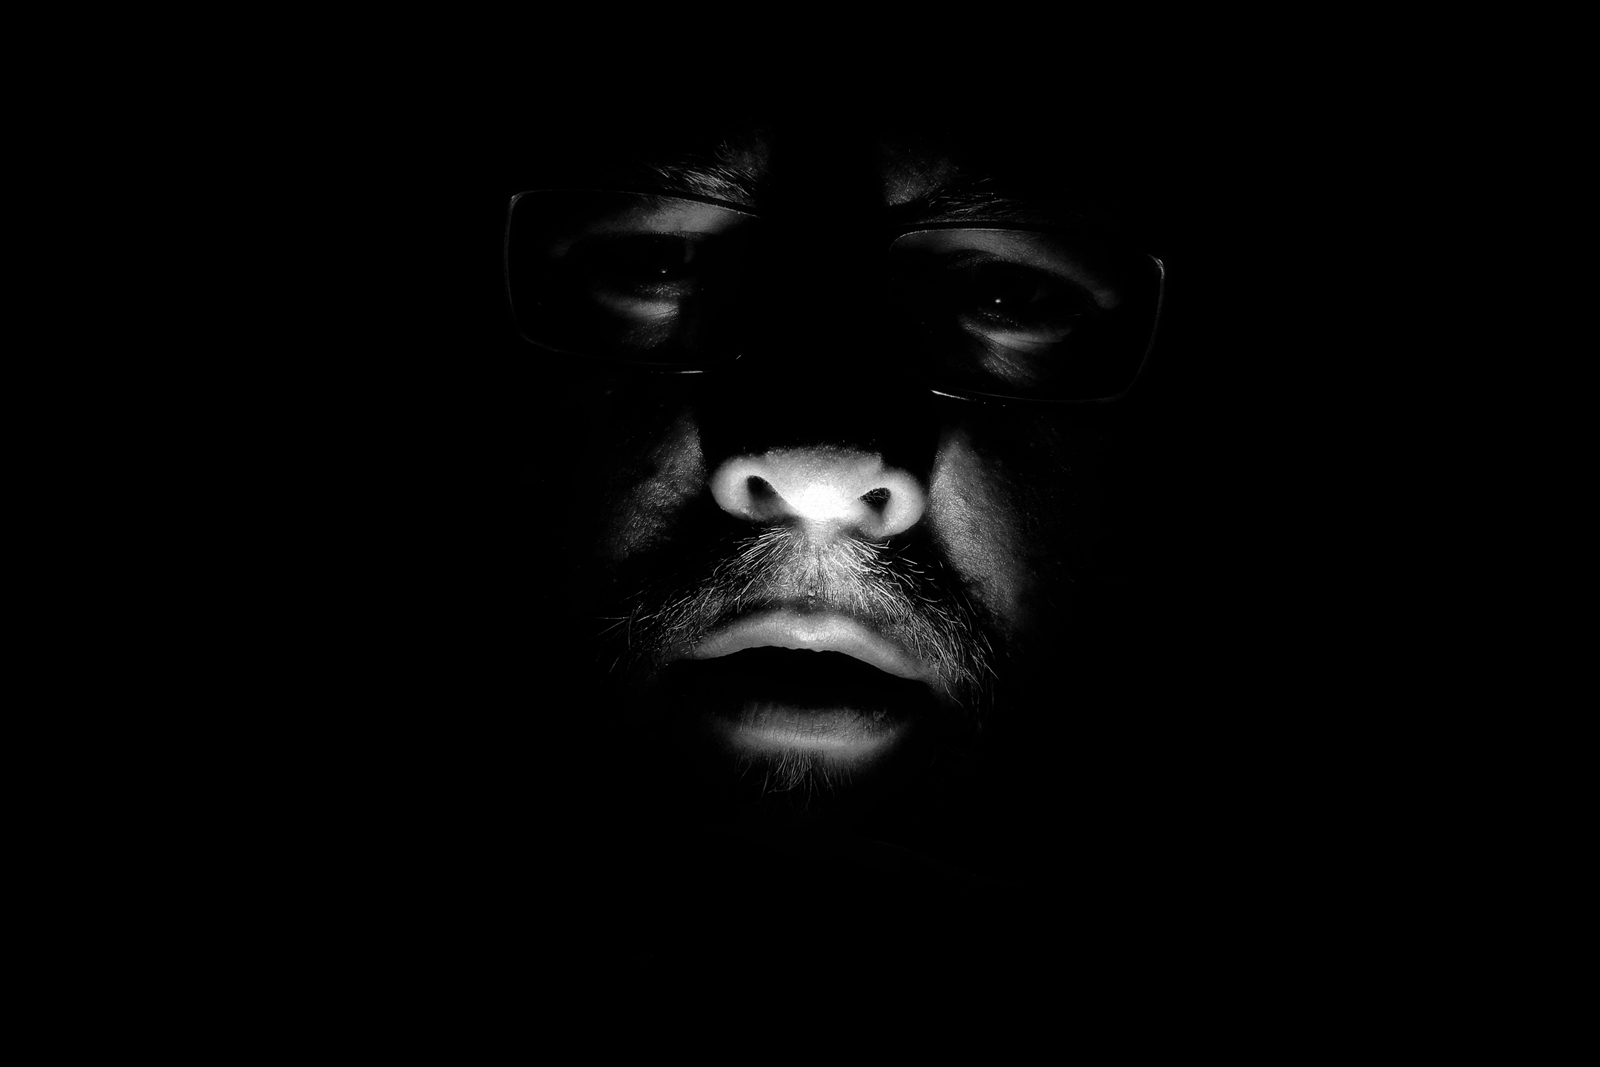 Schwarz Weiß Portrait mit Blitz von Danny Koerber für Sehnsucht der Augen.